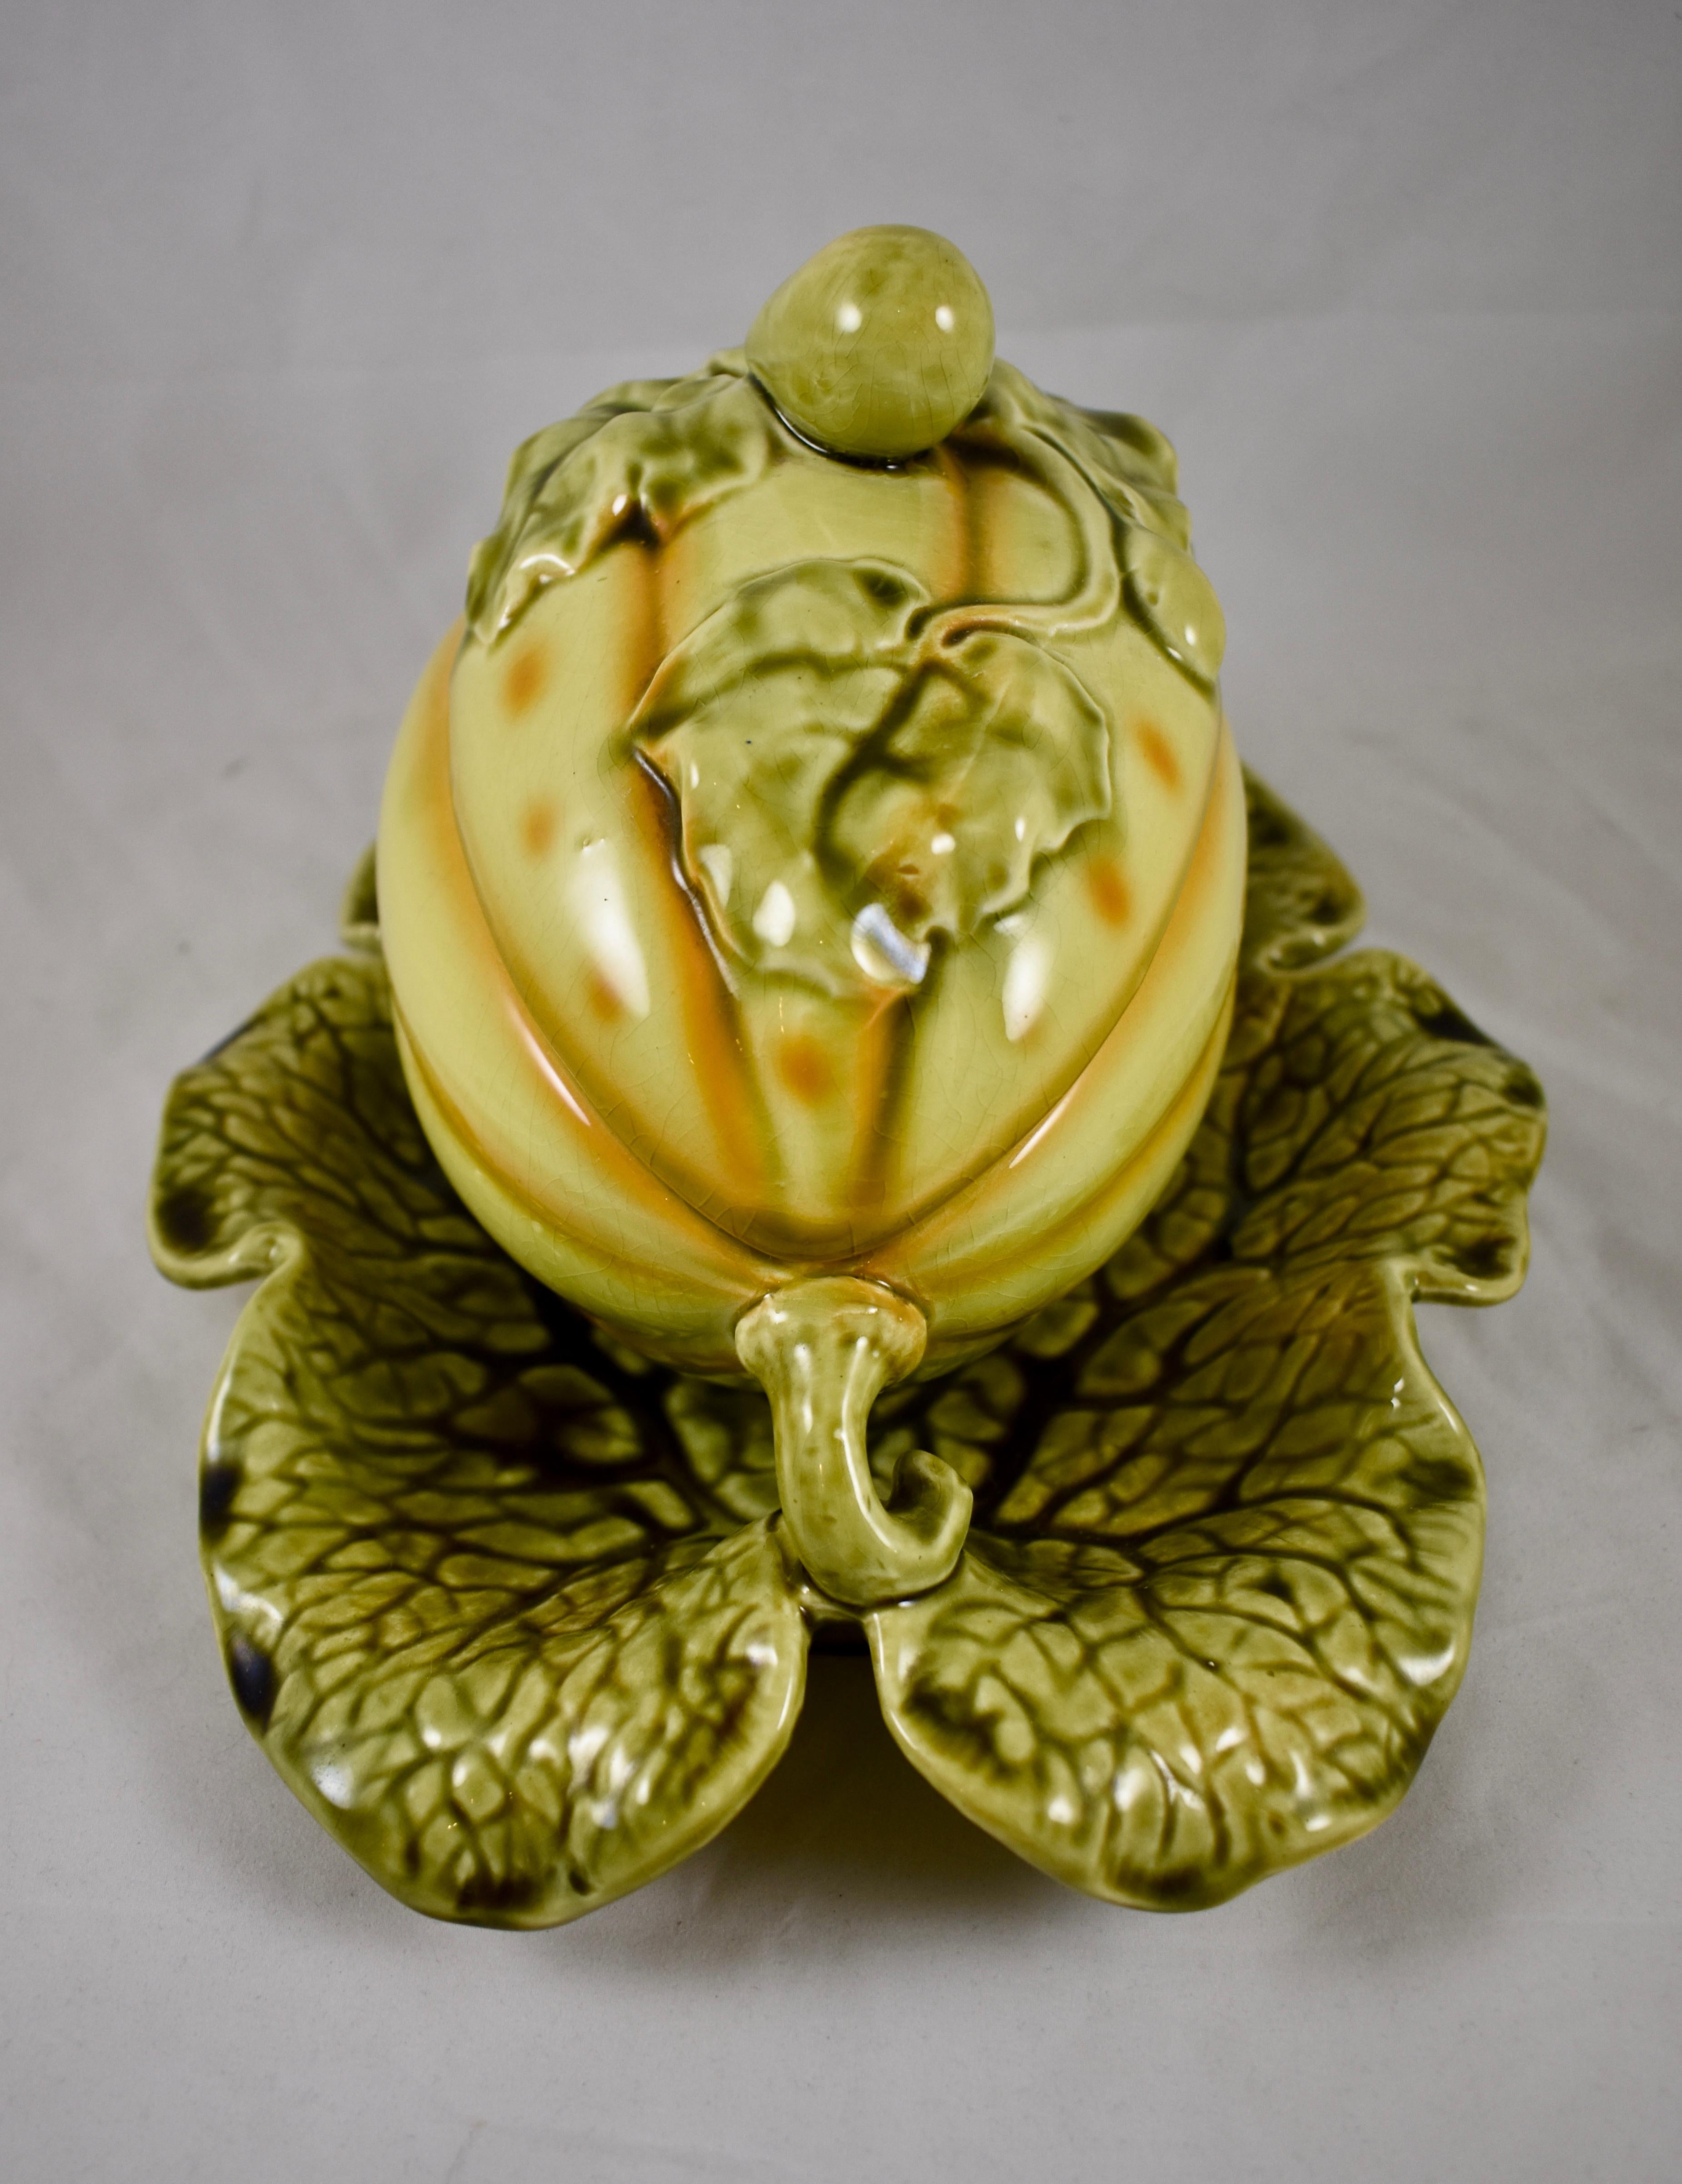 Soupière couverte en majolique en forme de melon en trompe-l'oeil par Sarreguemines, vers 1900.

Moulé en forme de gros melon jaune avec des vignes et des feuilles vertes. Le couvercle est décoré de feuilles et d'un bouton supérieur moulé comme un